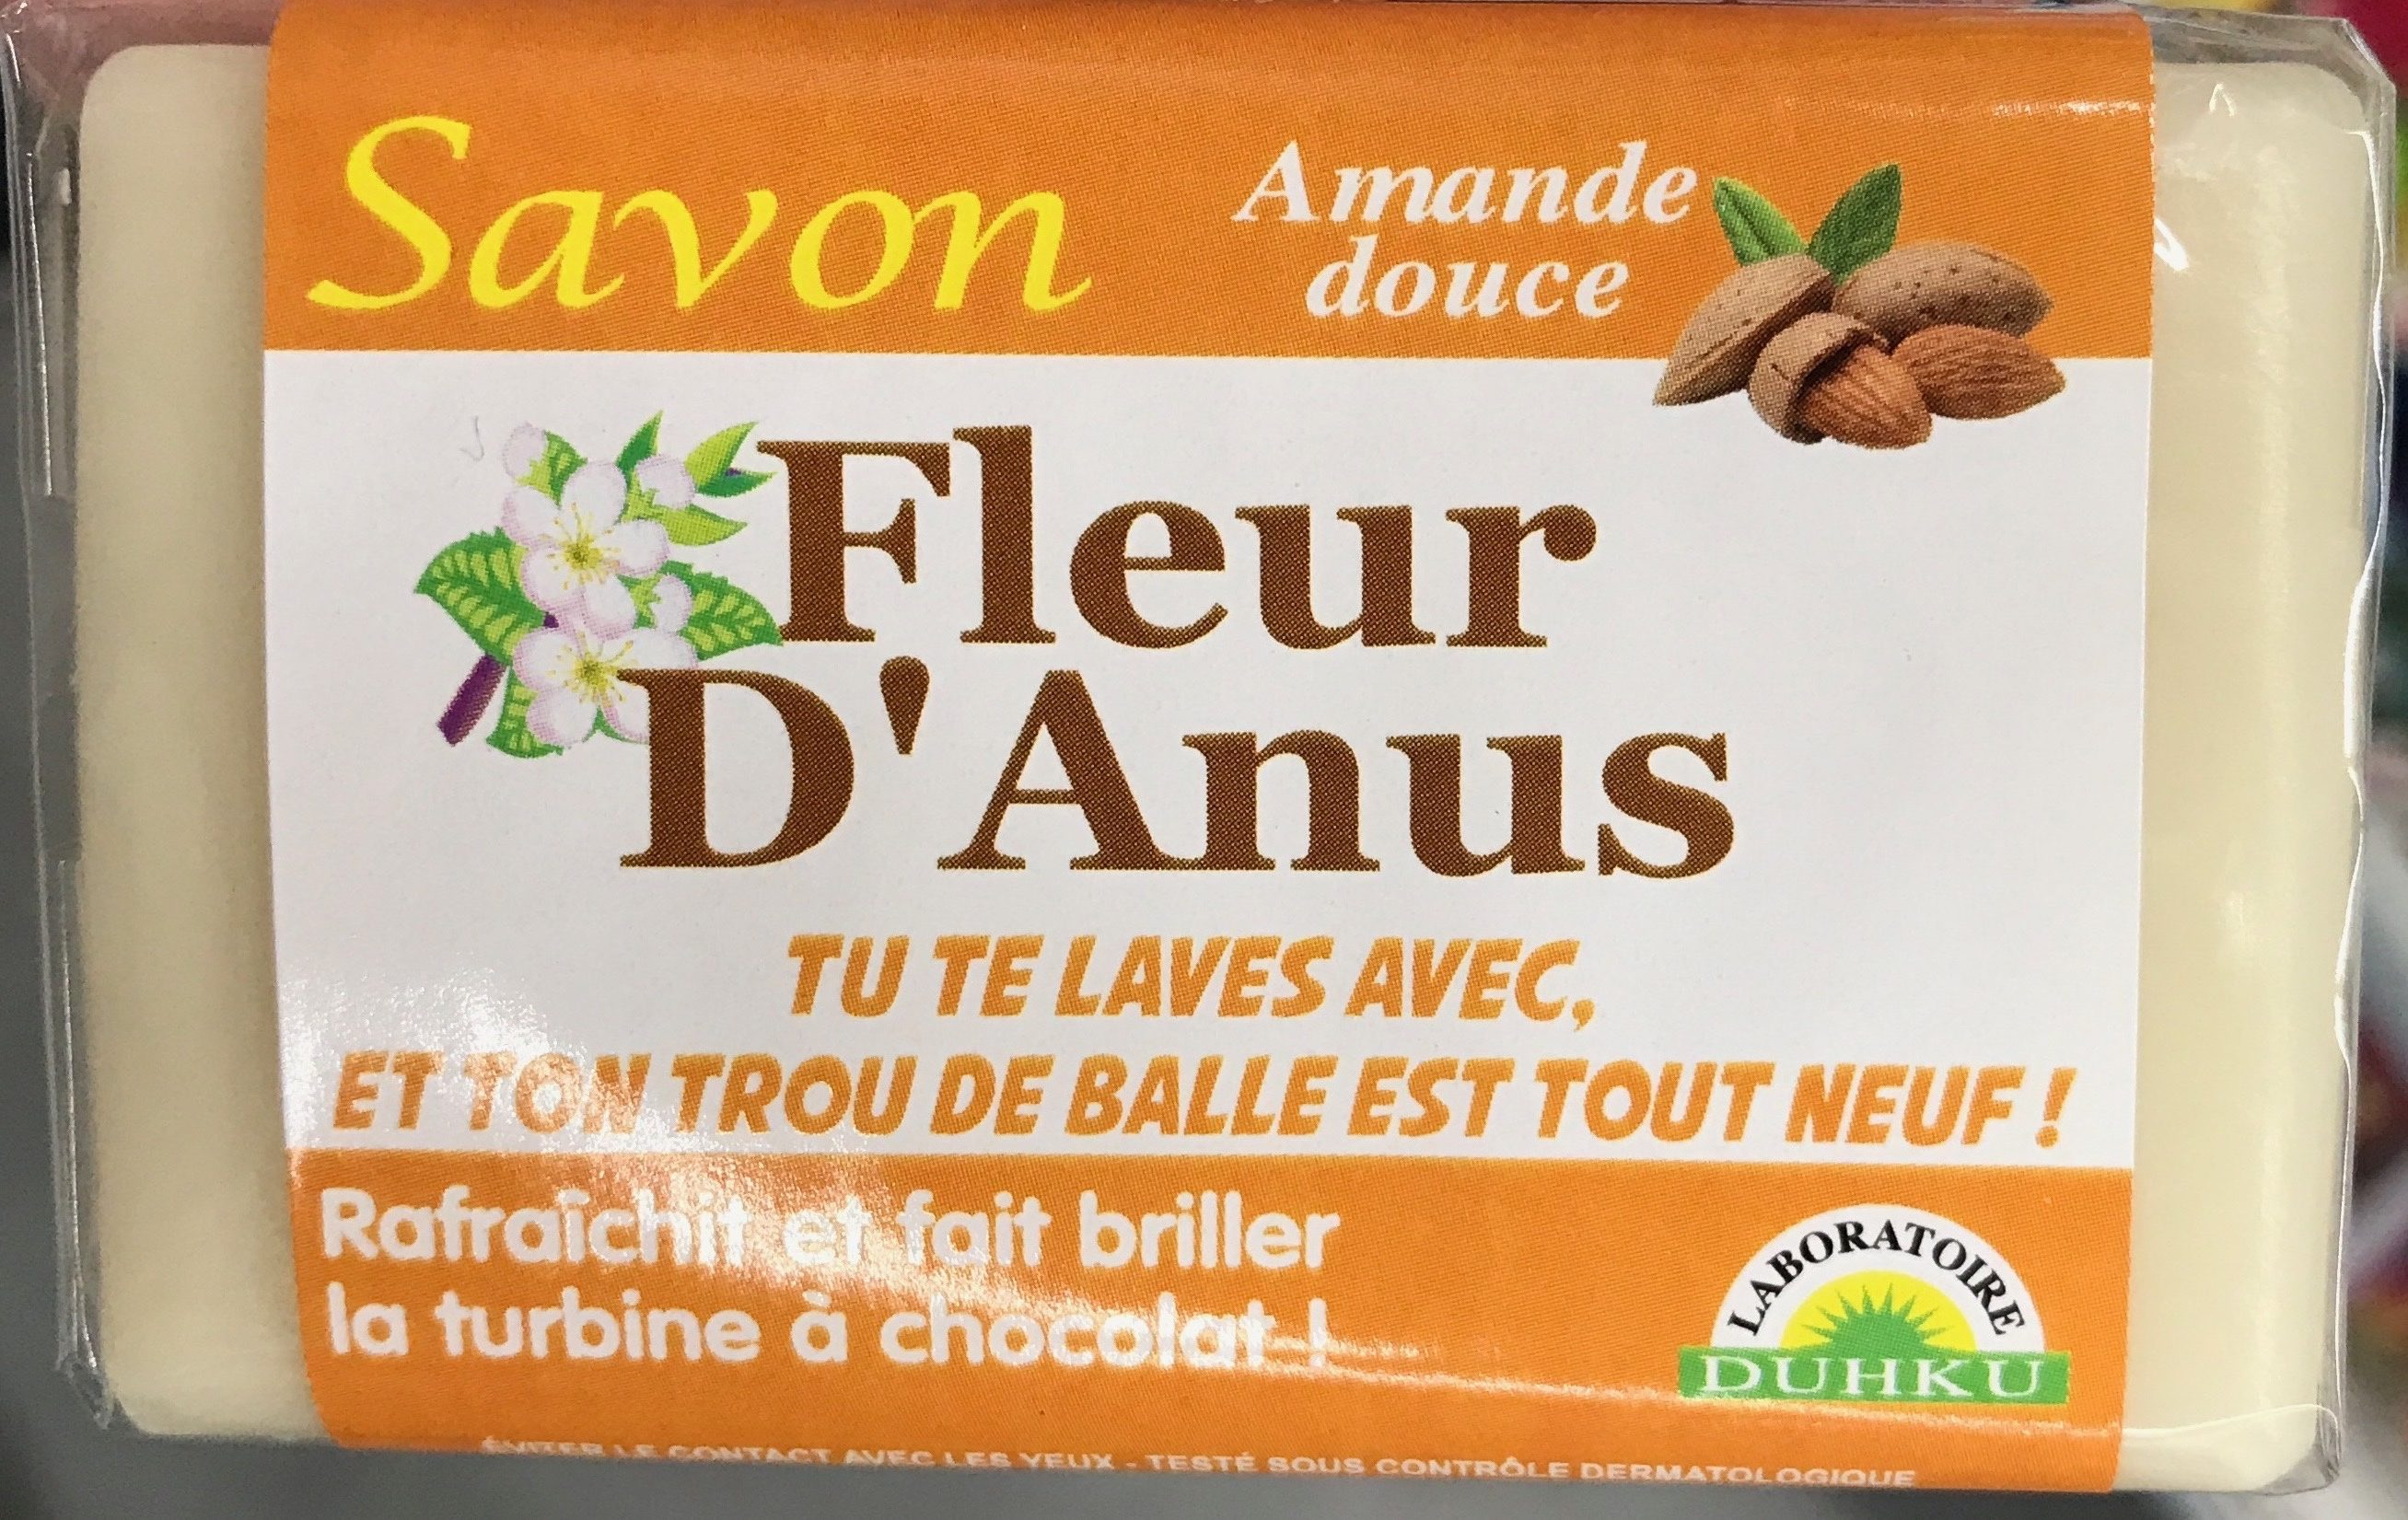 Savon Fleur d'Anus Amande douce - Product - fr